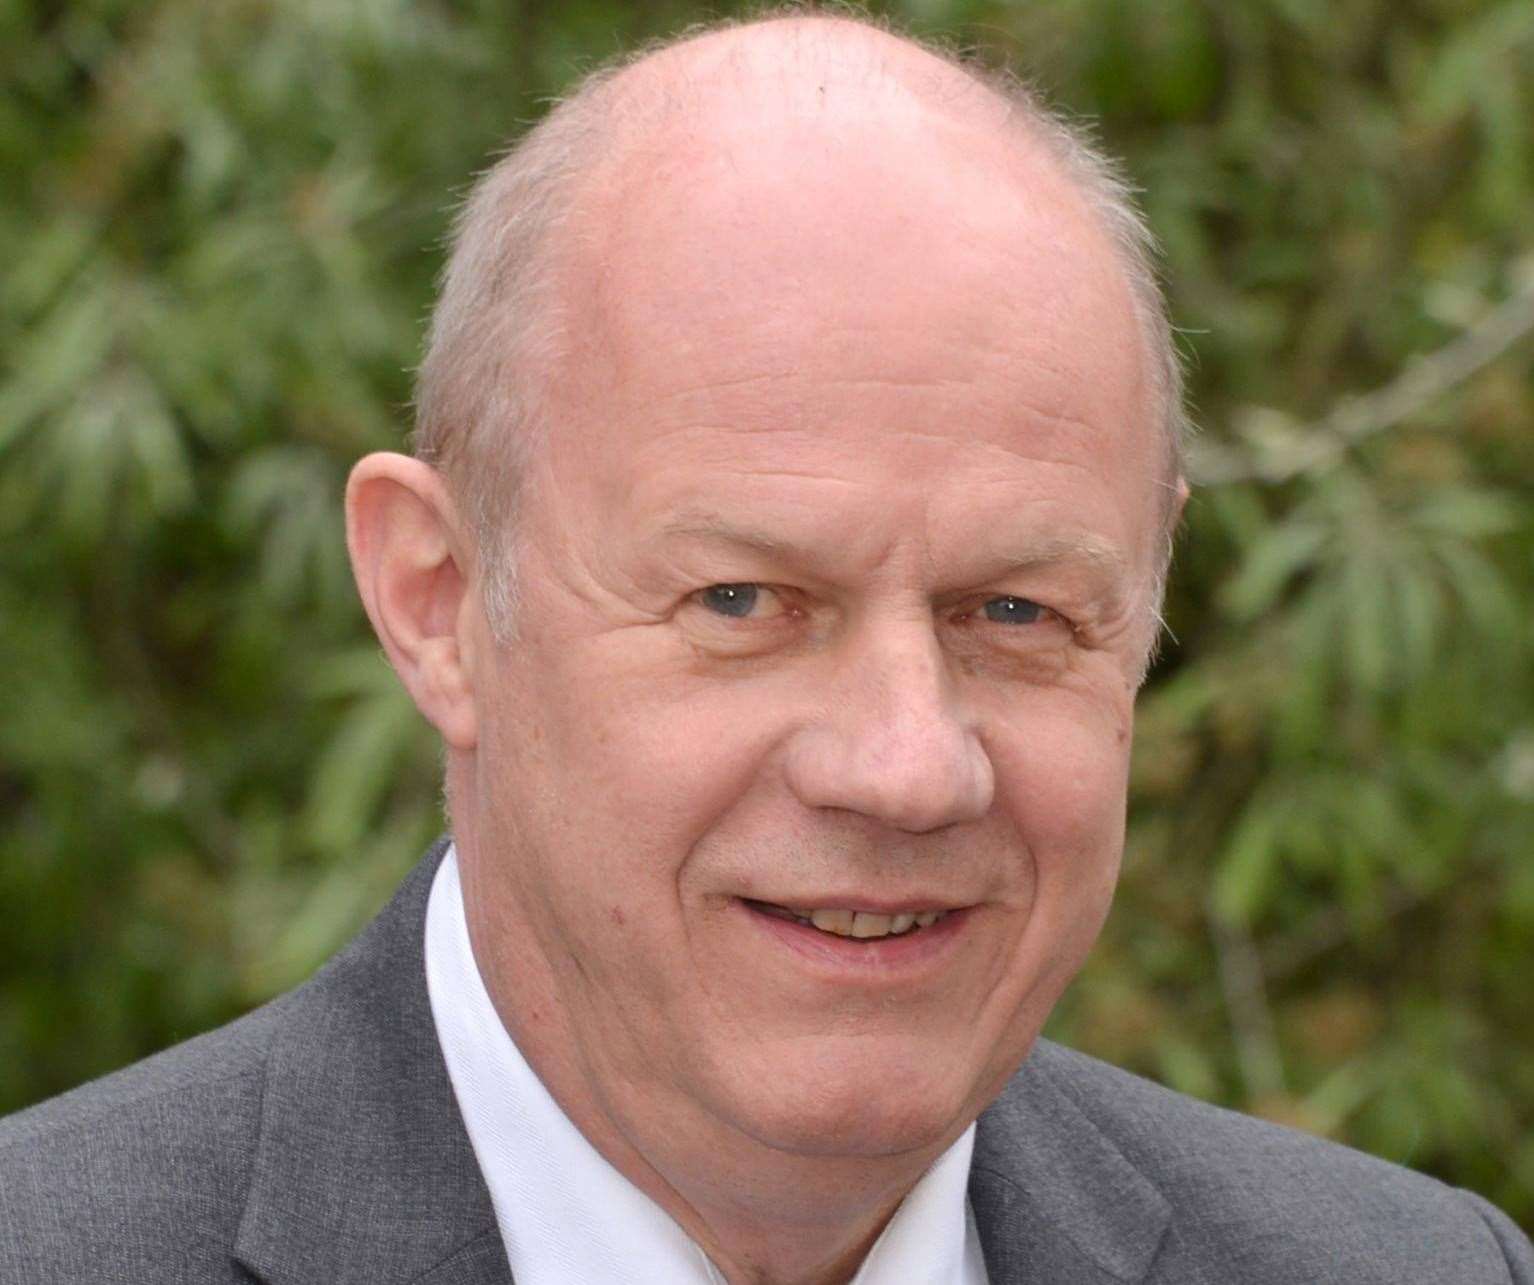 Damian Green, MP for Ashford